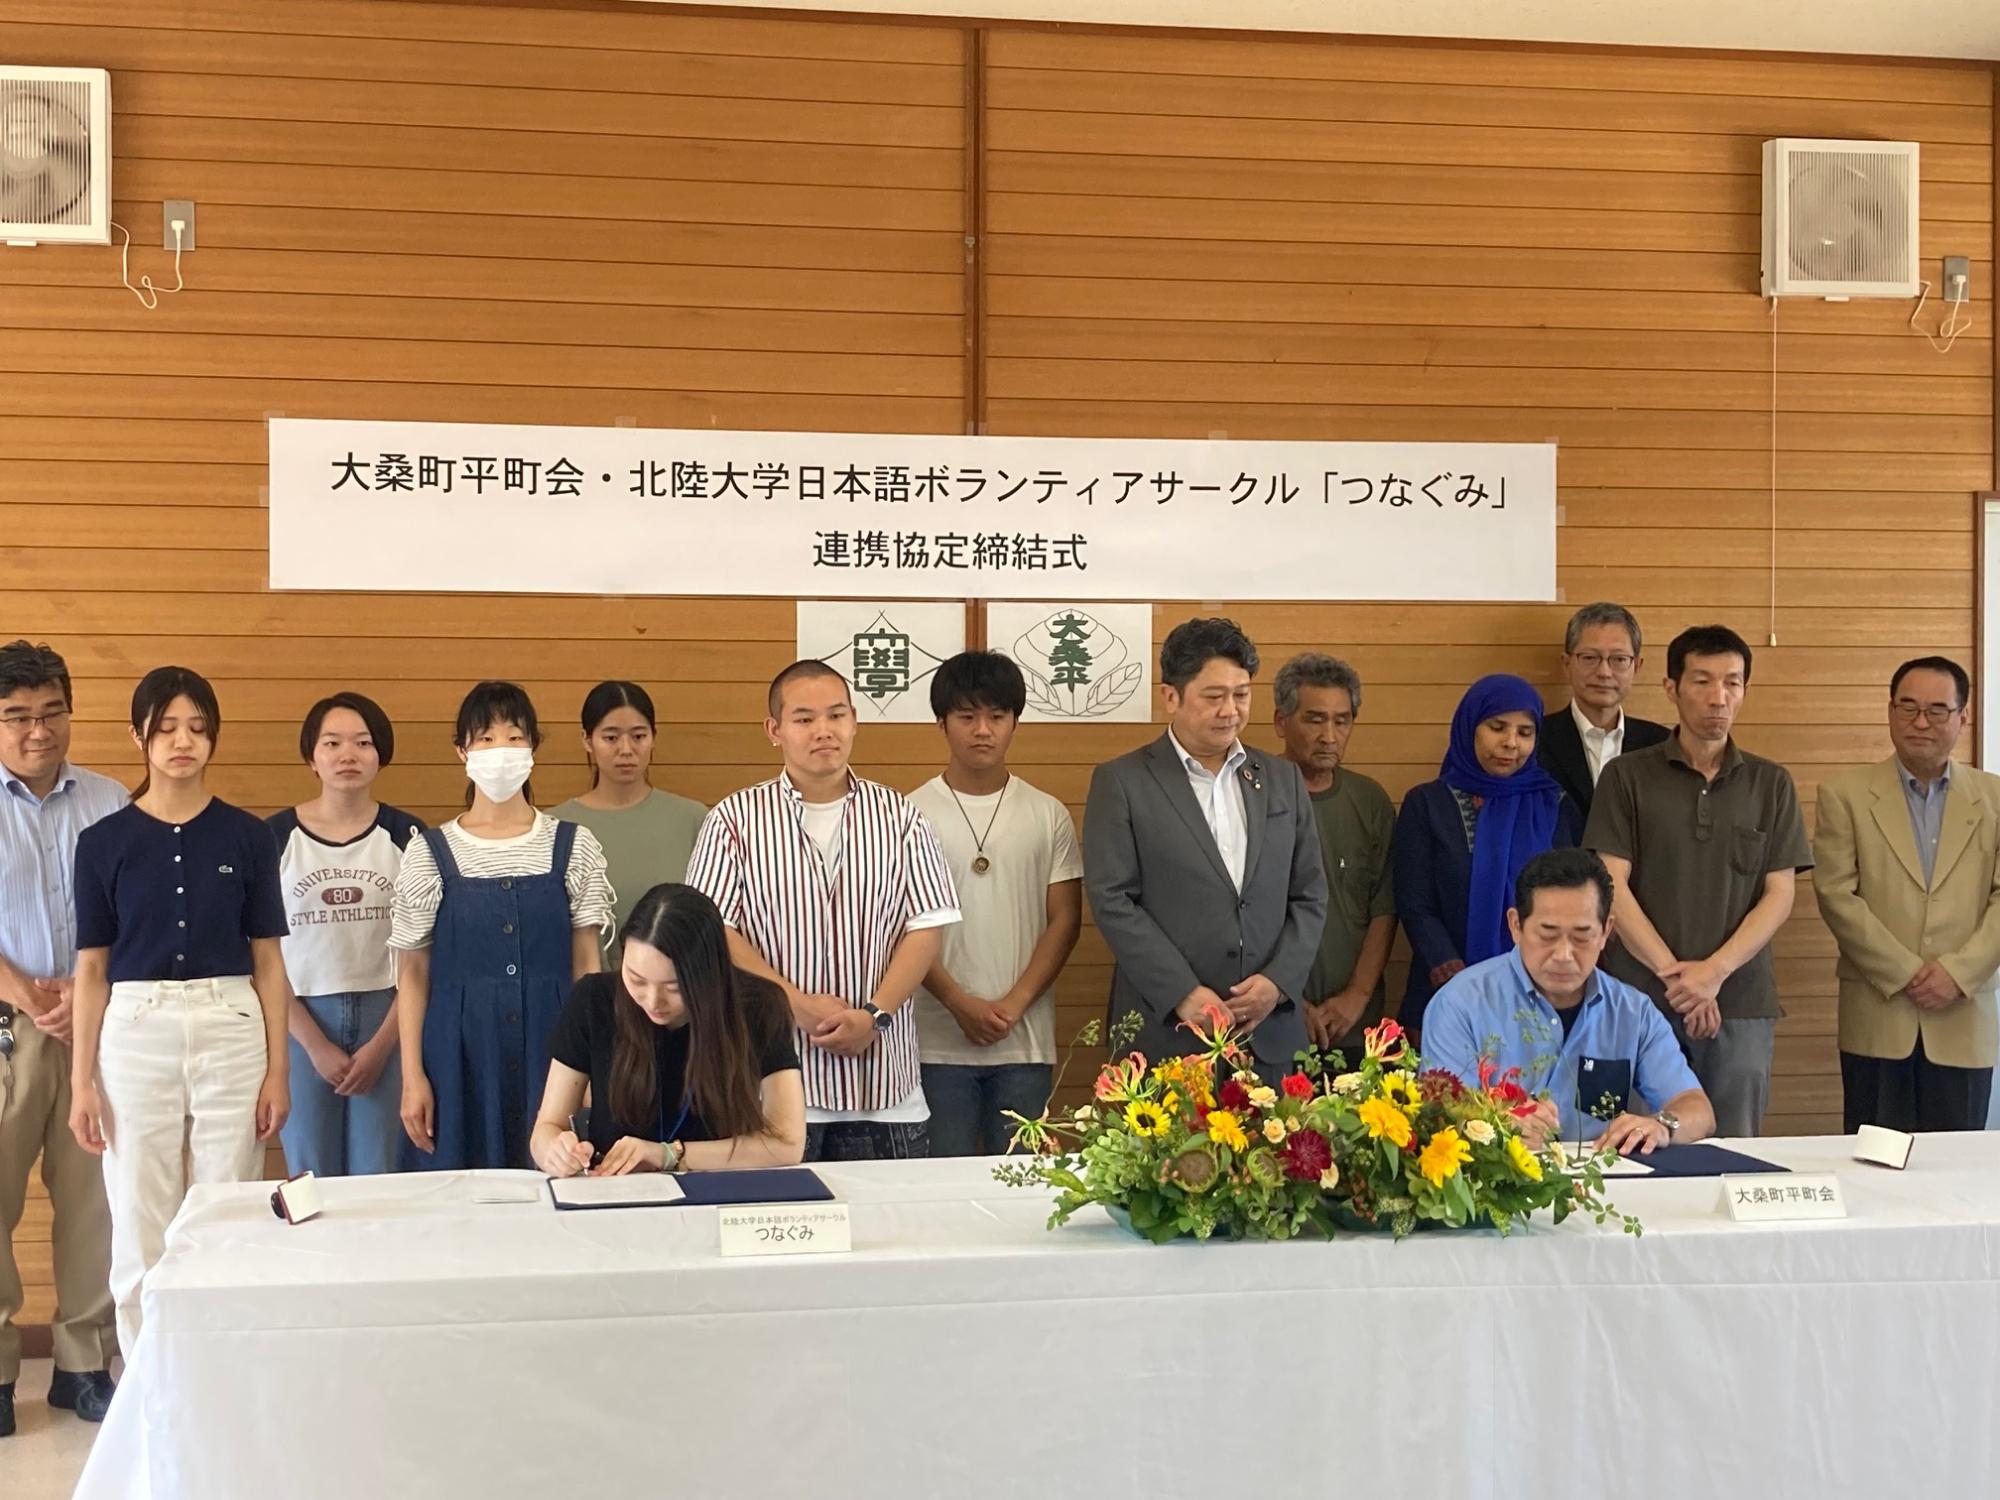 大桑町平町会と北陸大学日本語ボランティアサークル「つなぐみ」の連携協定締結式